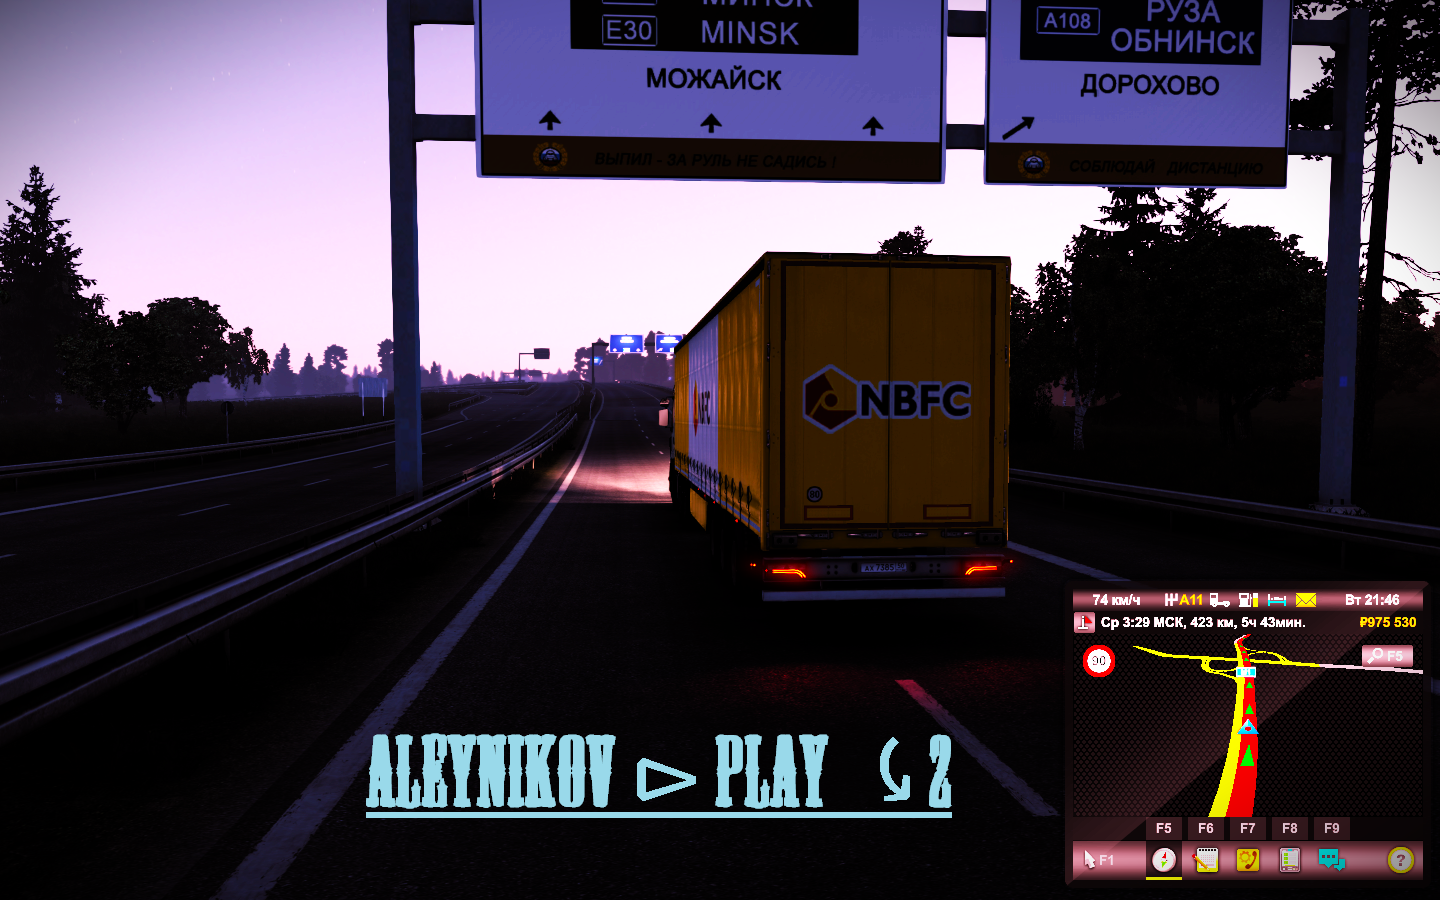 Продолжим Euro Truck Simulator 2  с Русской картой !!  ⤹  Будем познавать свою Россию  ✌